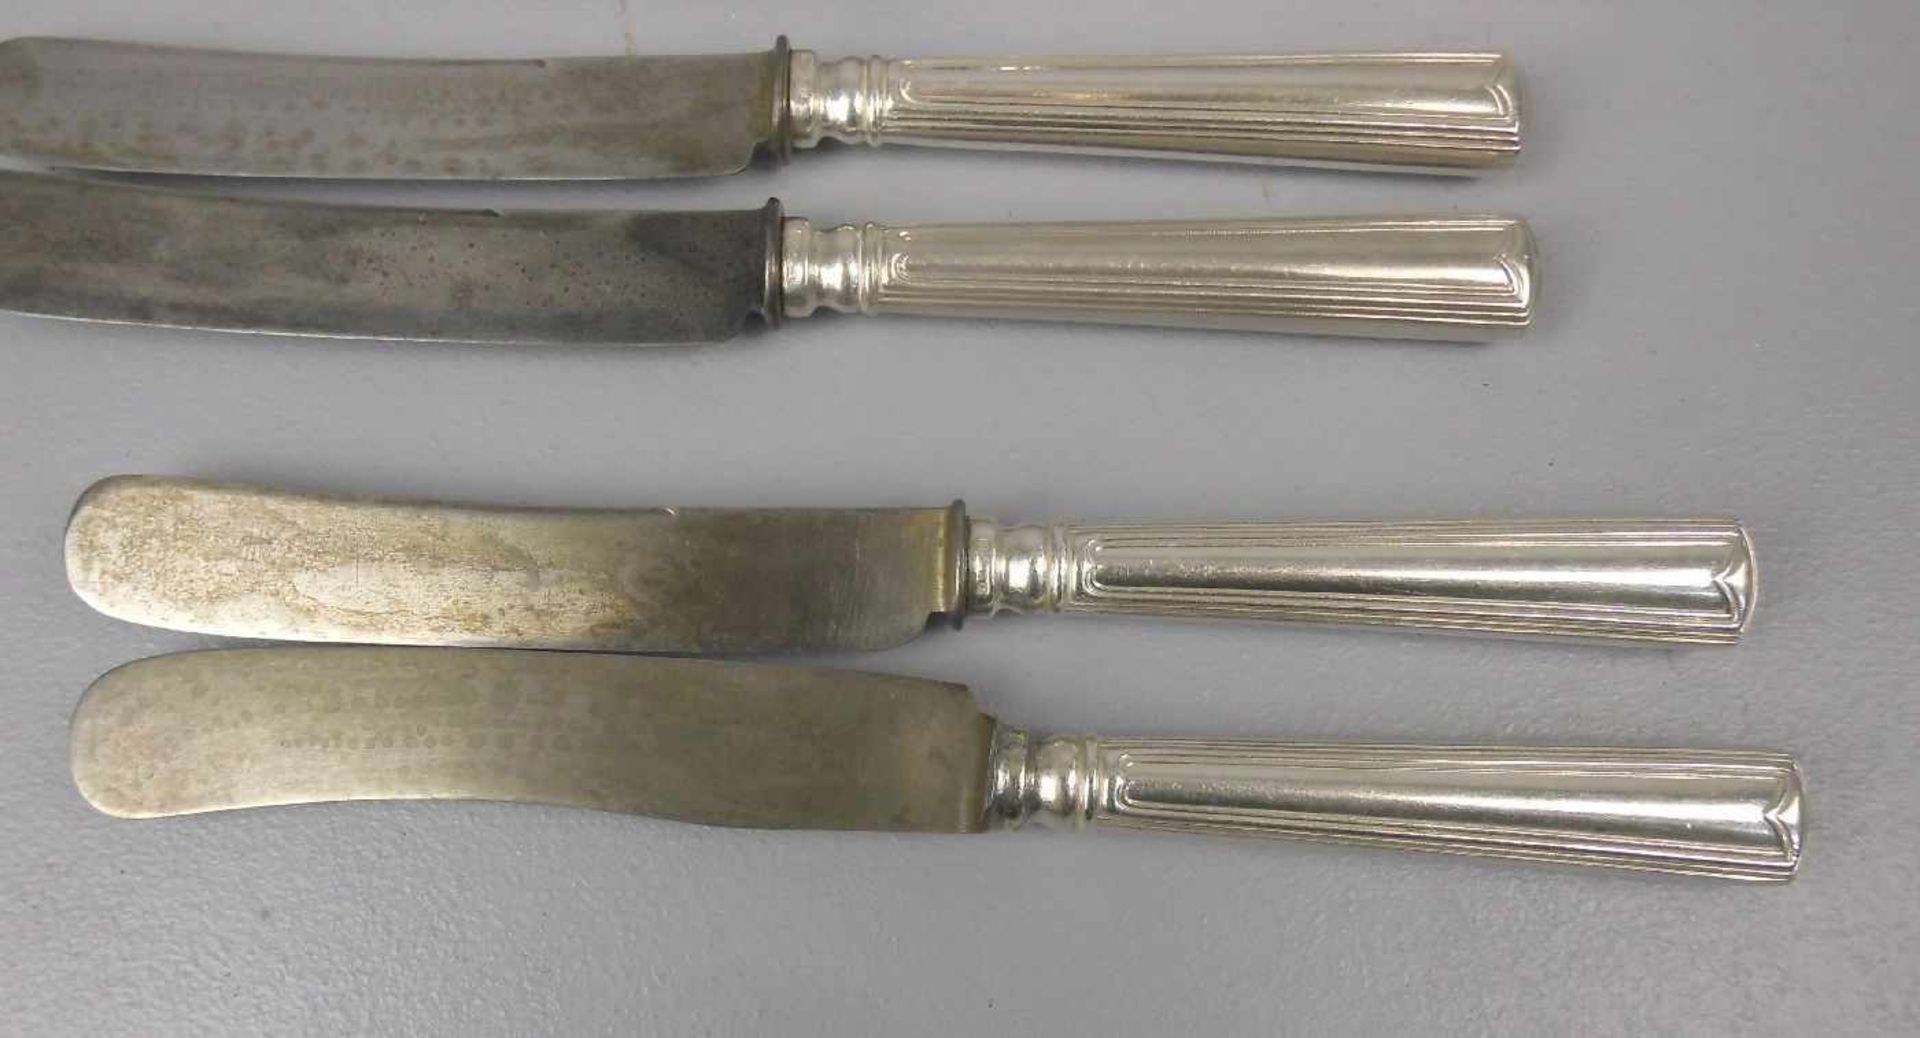 12 FRÜHSTÜCKSMESSER / knifes, um 1900, Griff aus Silber (Säure getestet), insg. ca. 720 g, Frankeich - Bild 2 aus 3